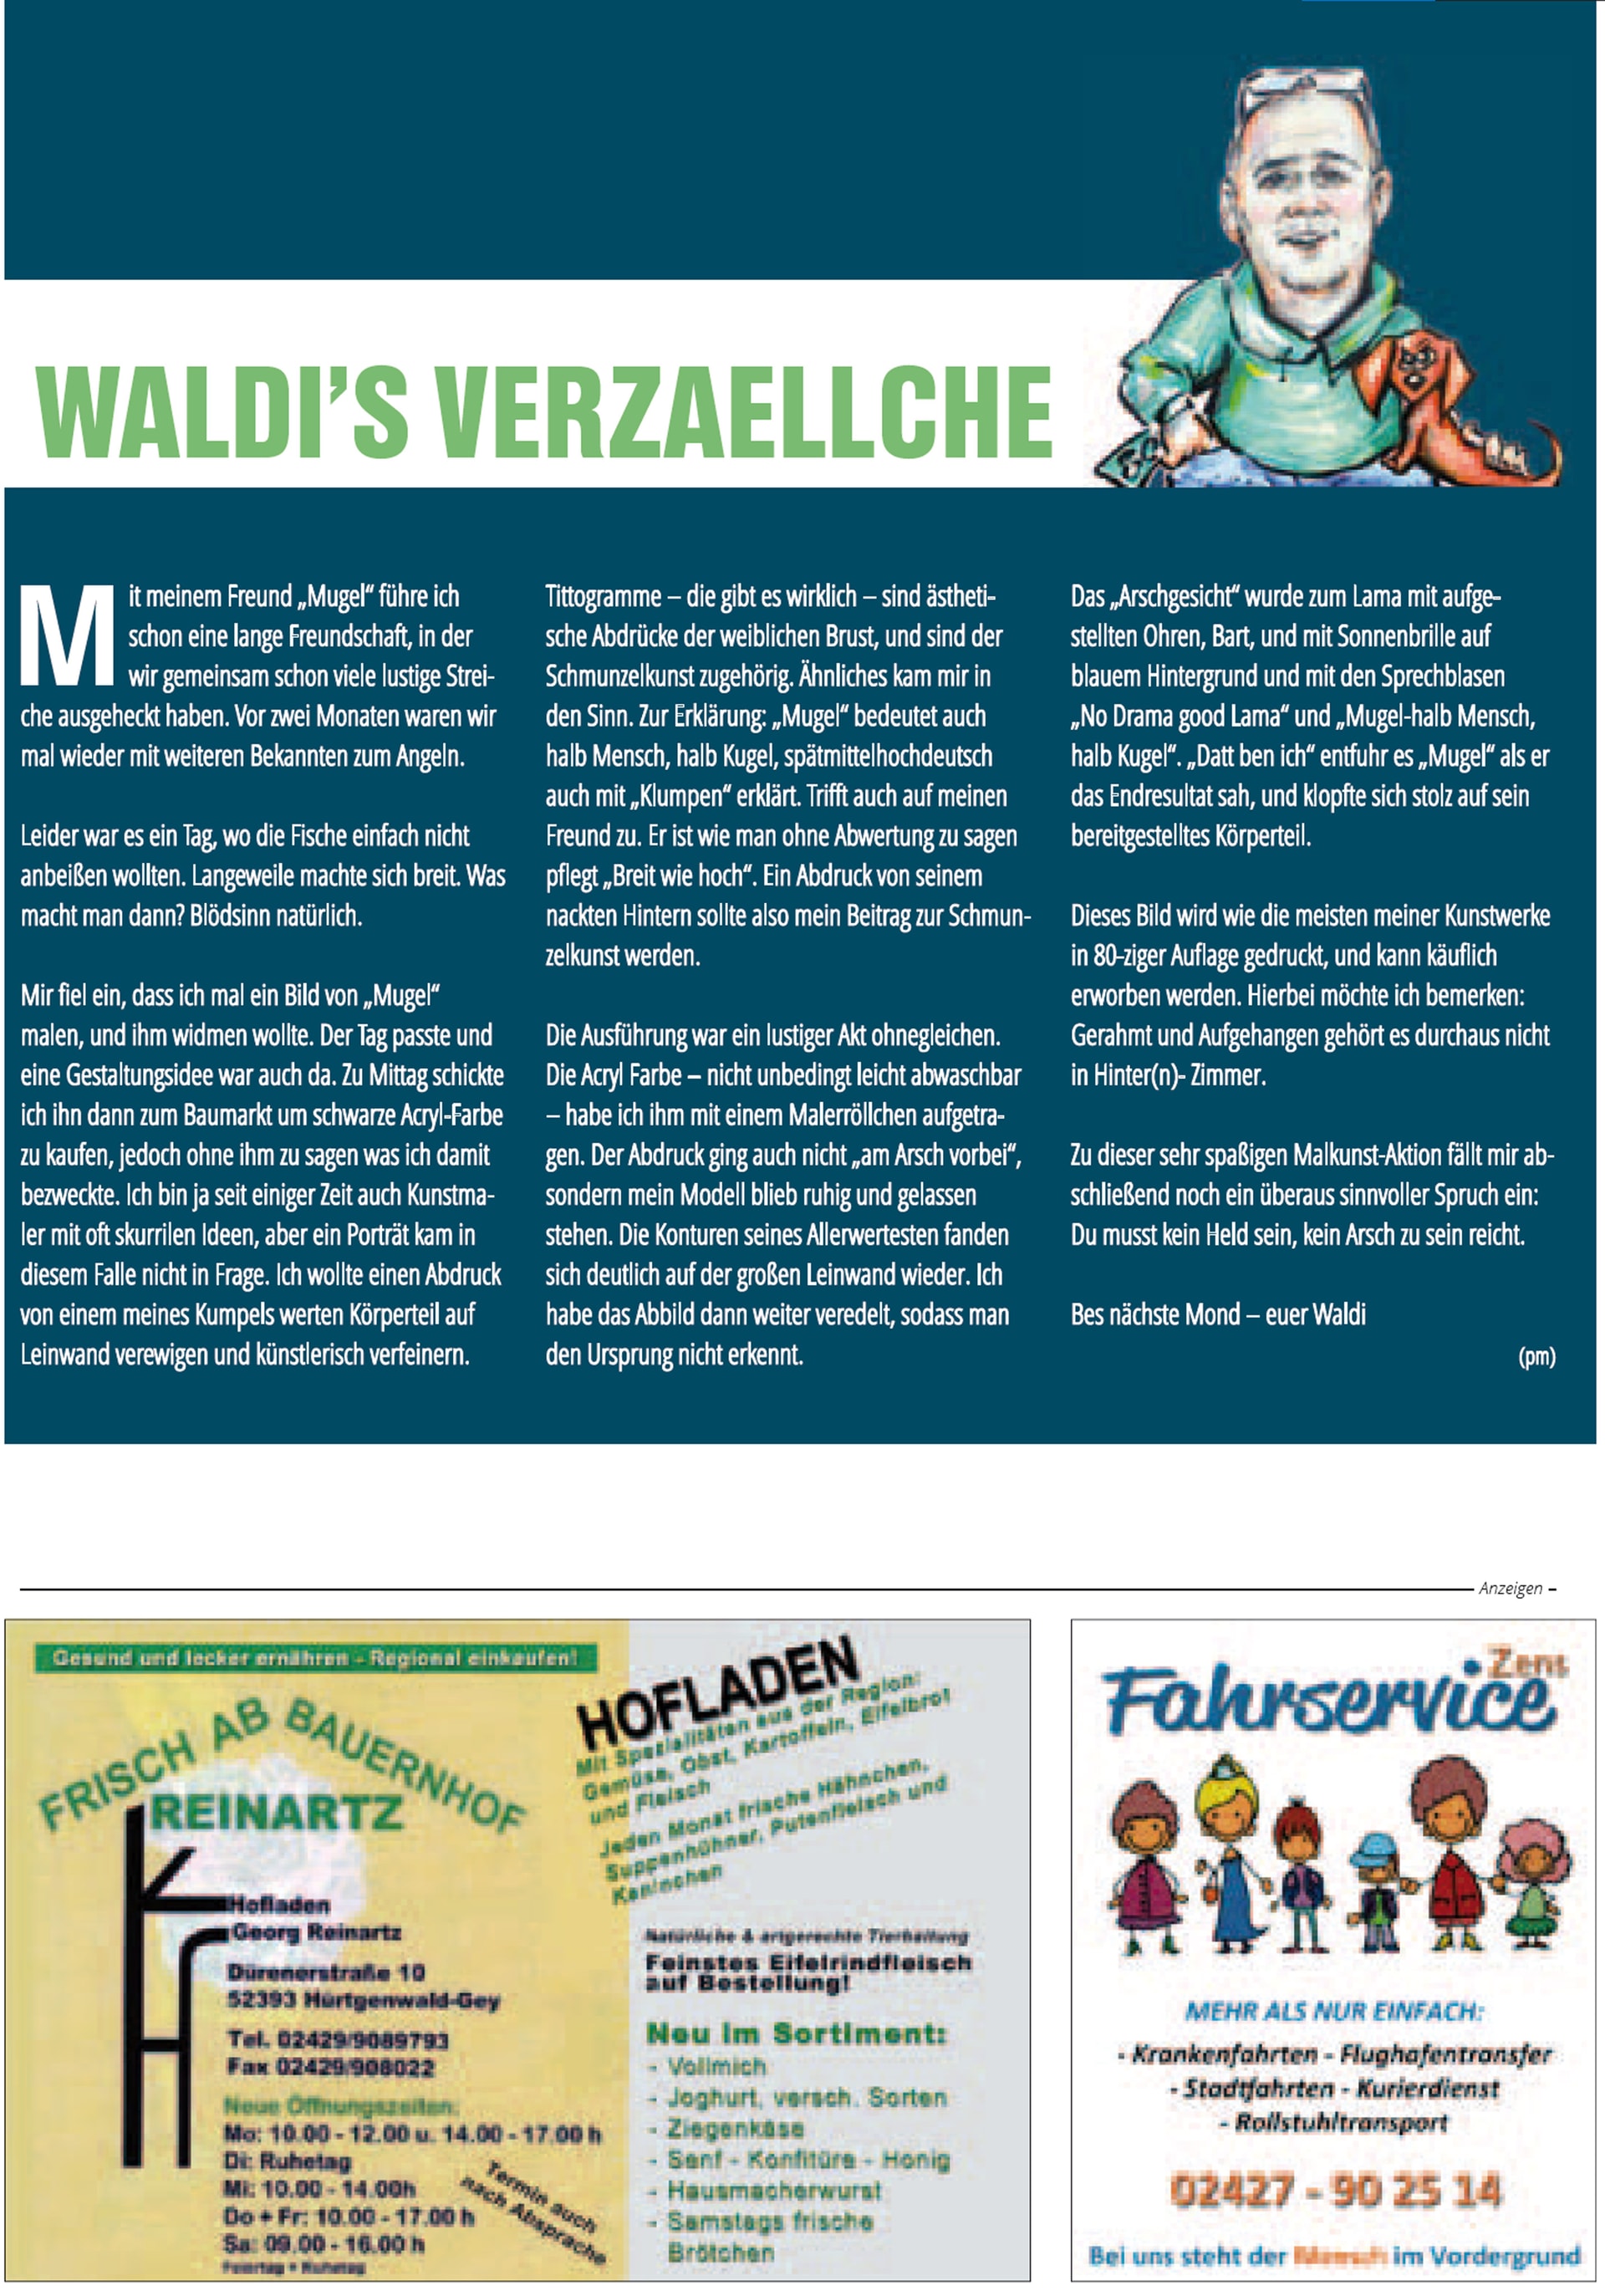 Waldi’s Verzällche - Waldis Verzeallche März